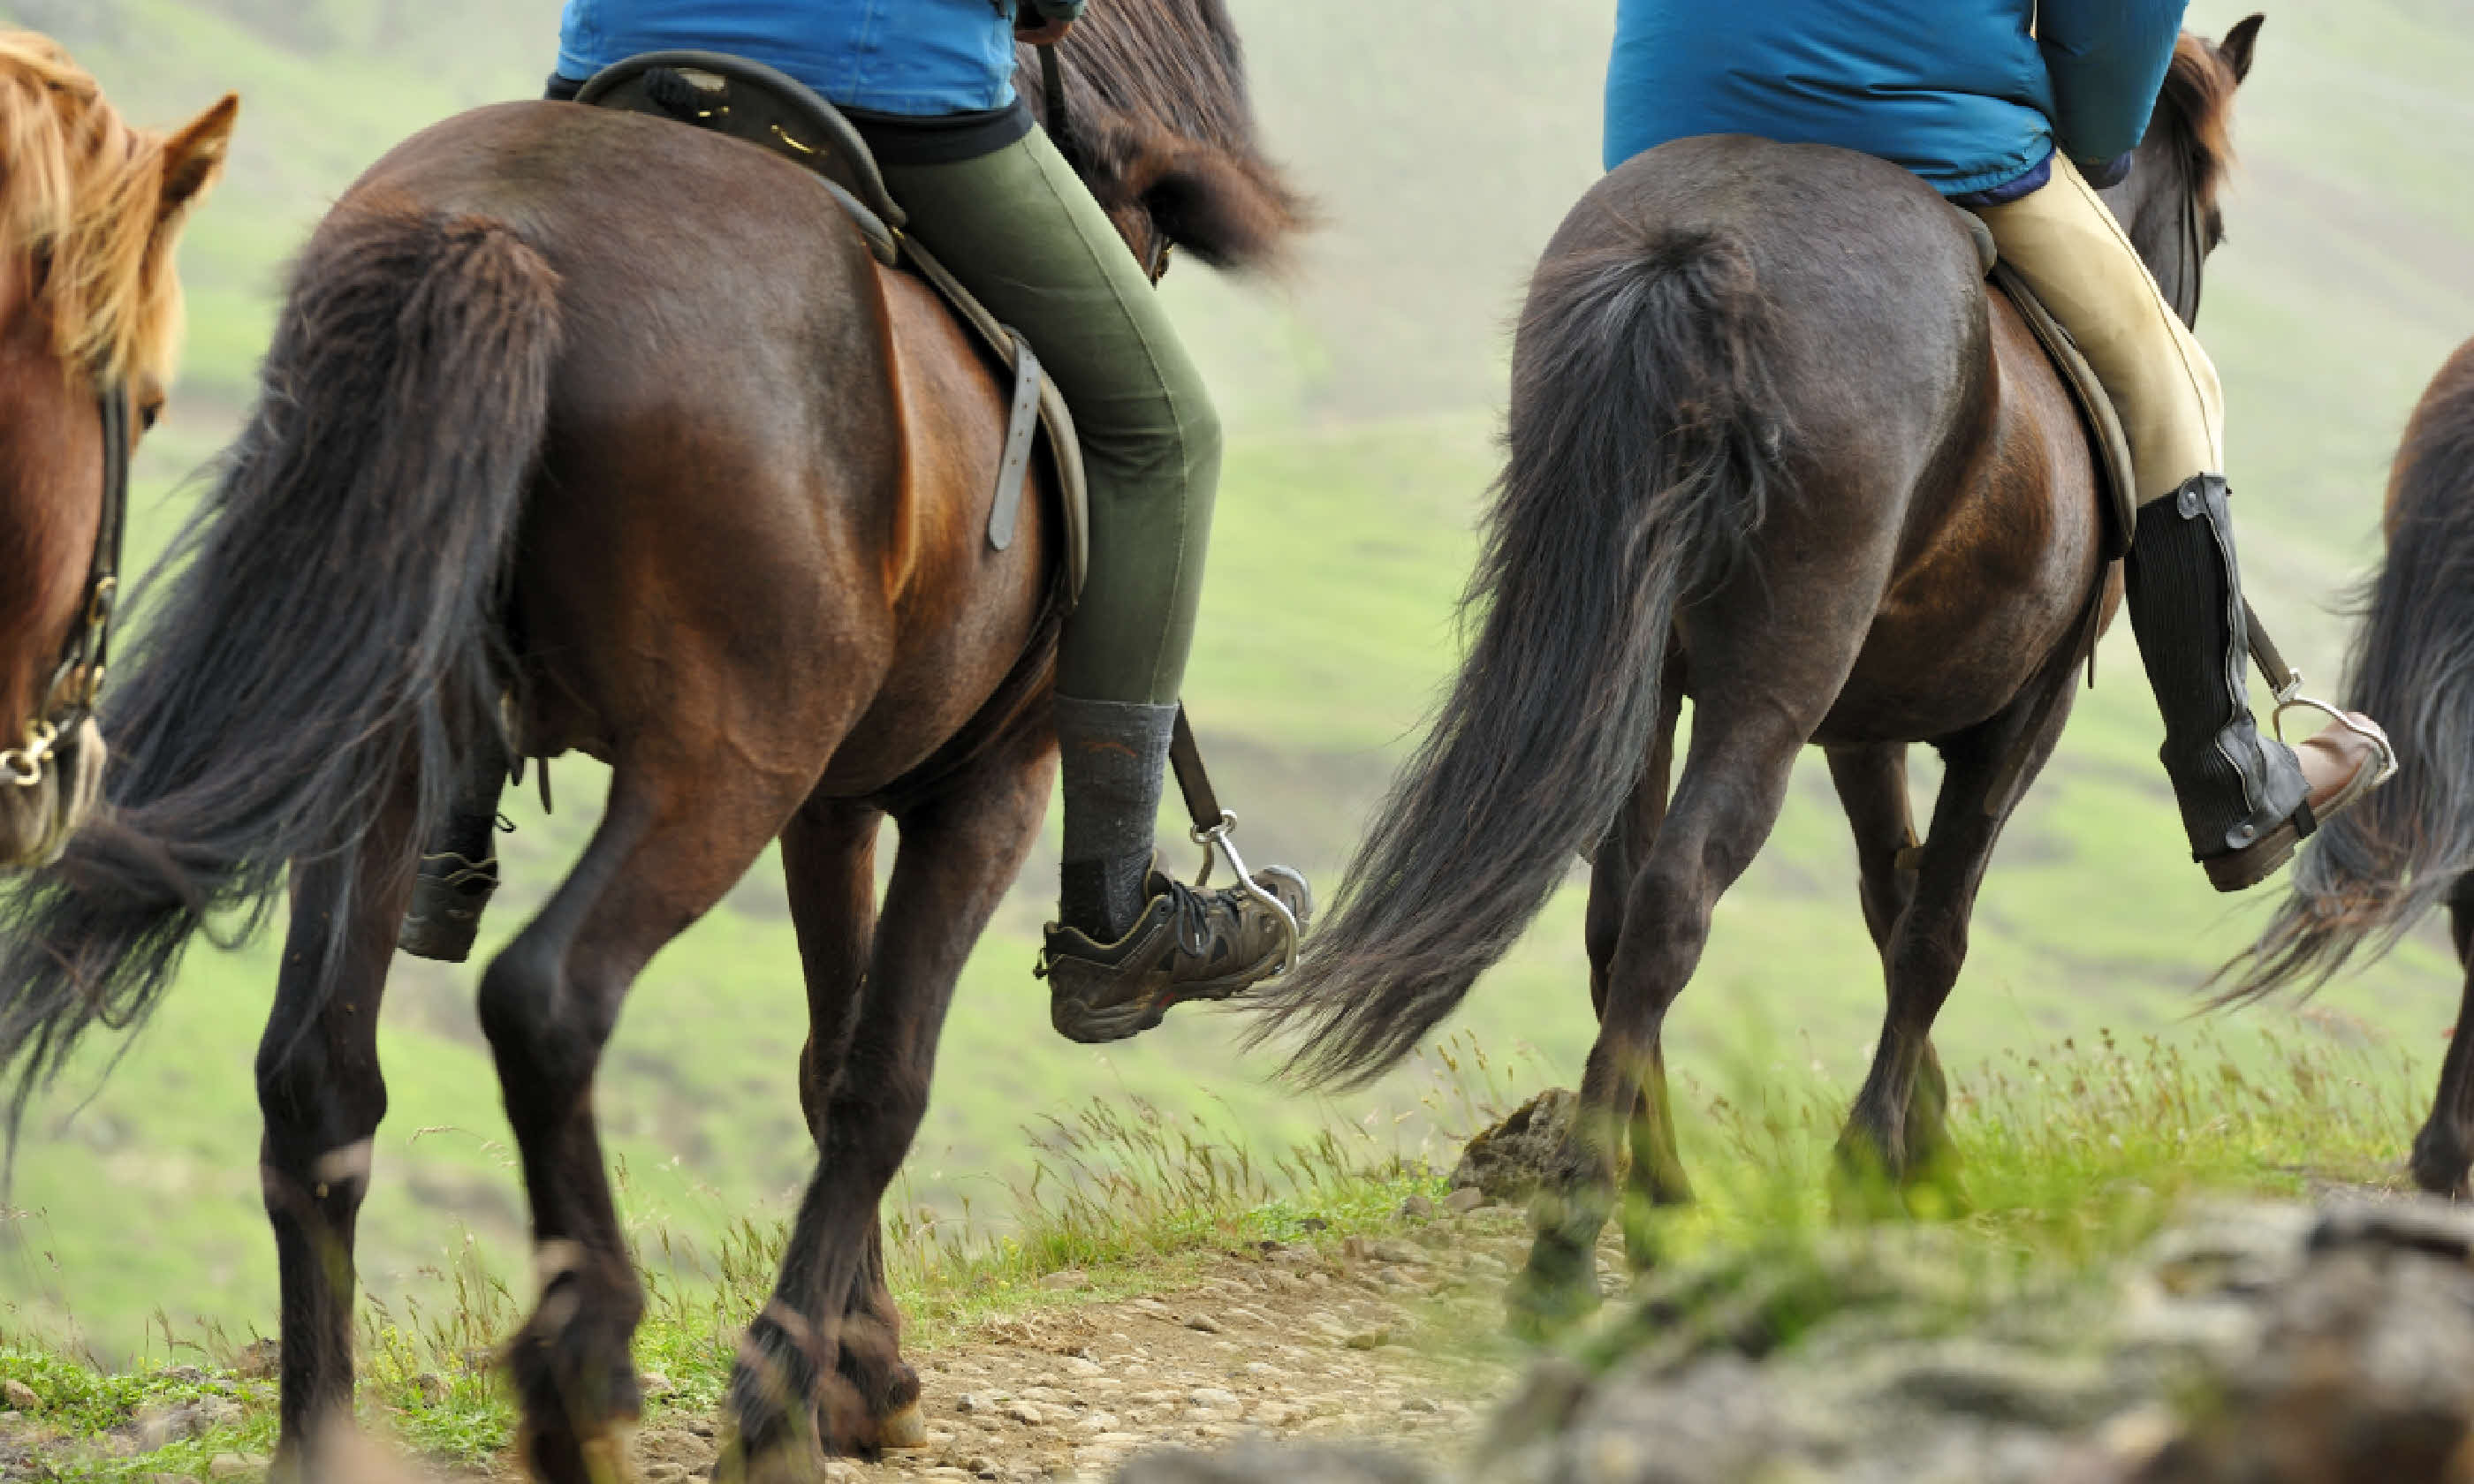 Horses in Iceland (Shutterstock)